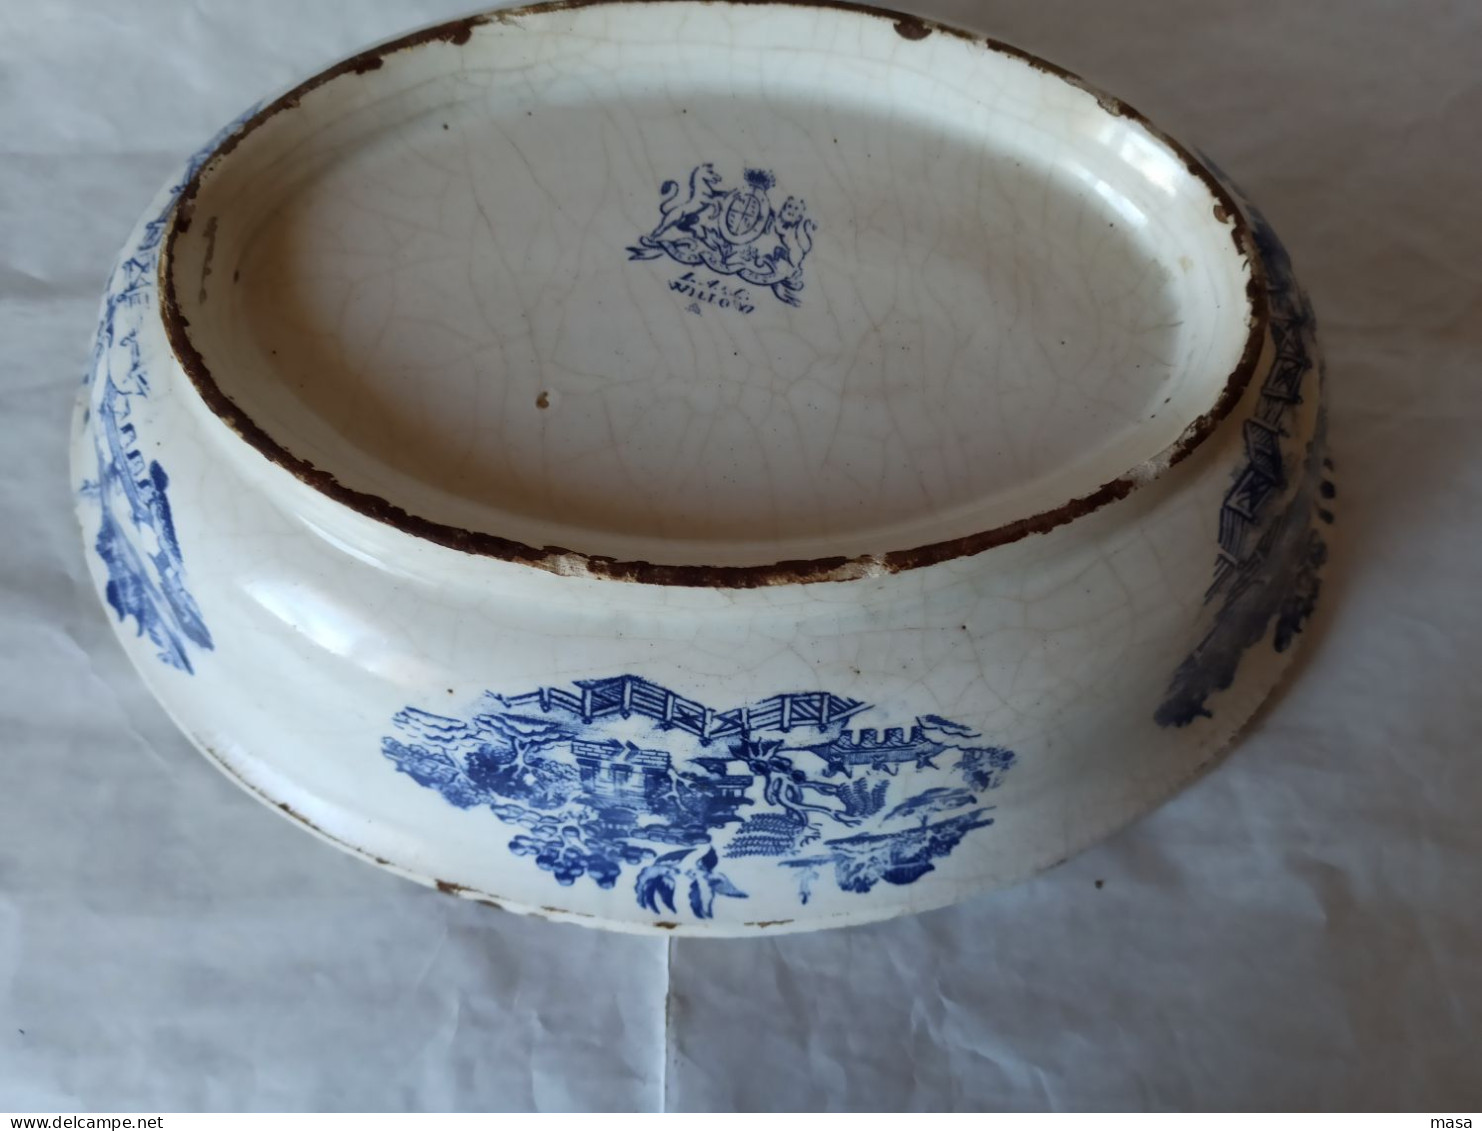 Piatto da portata Willow ceramica blu e bianco